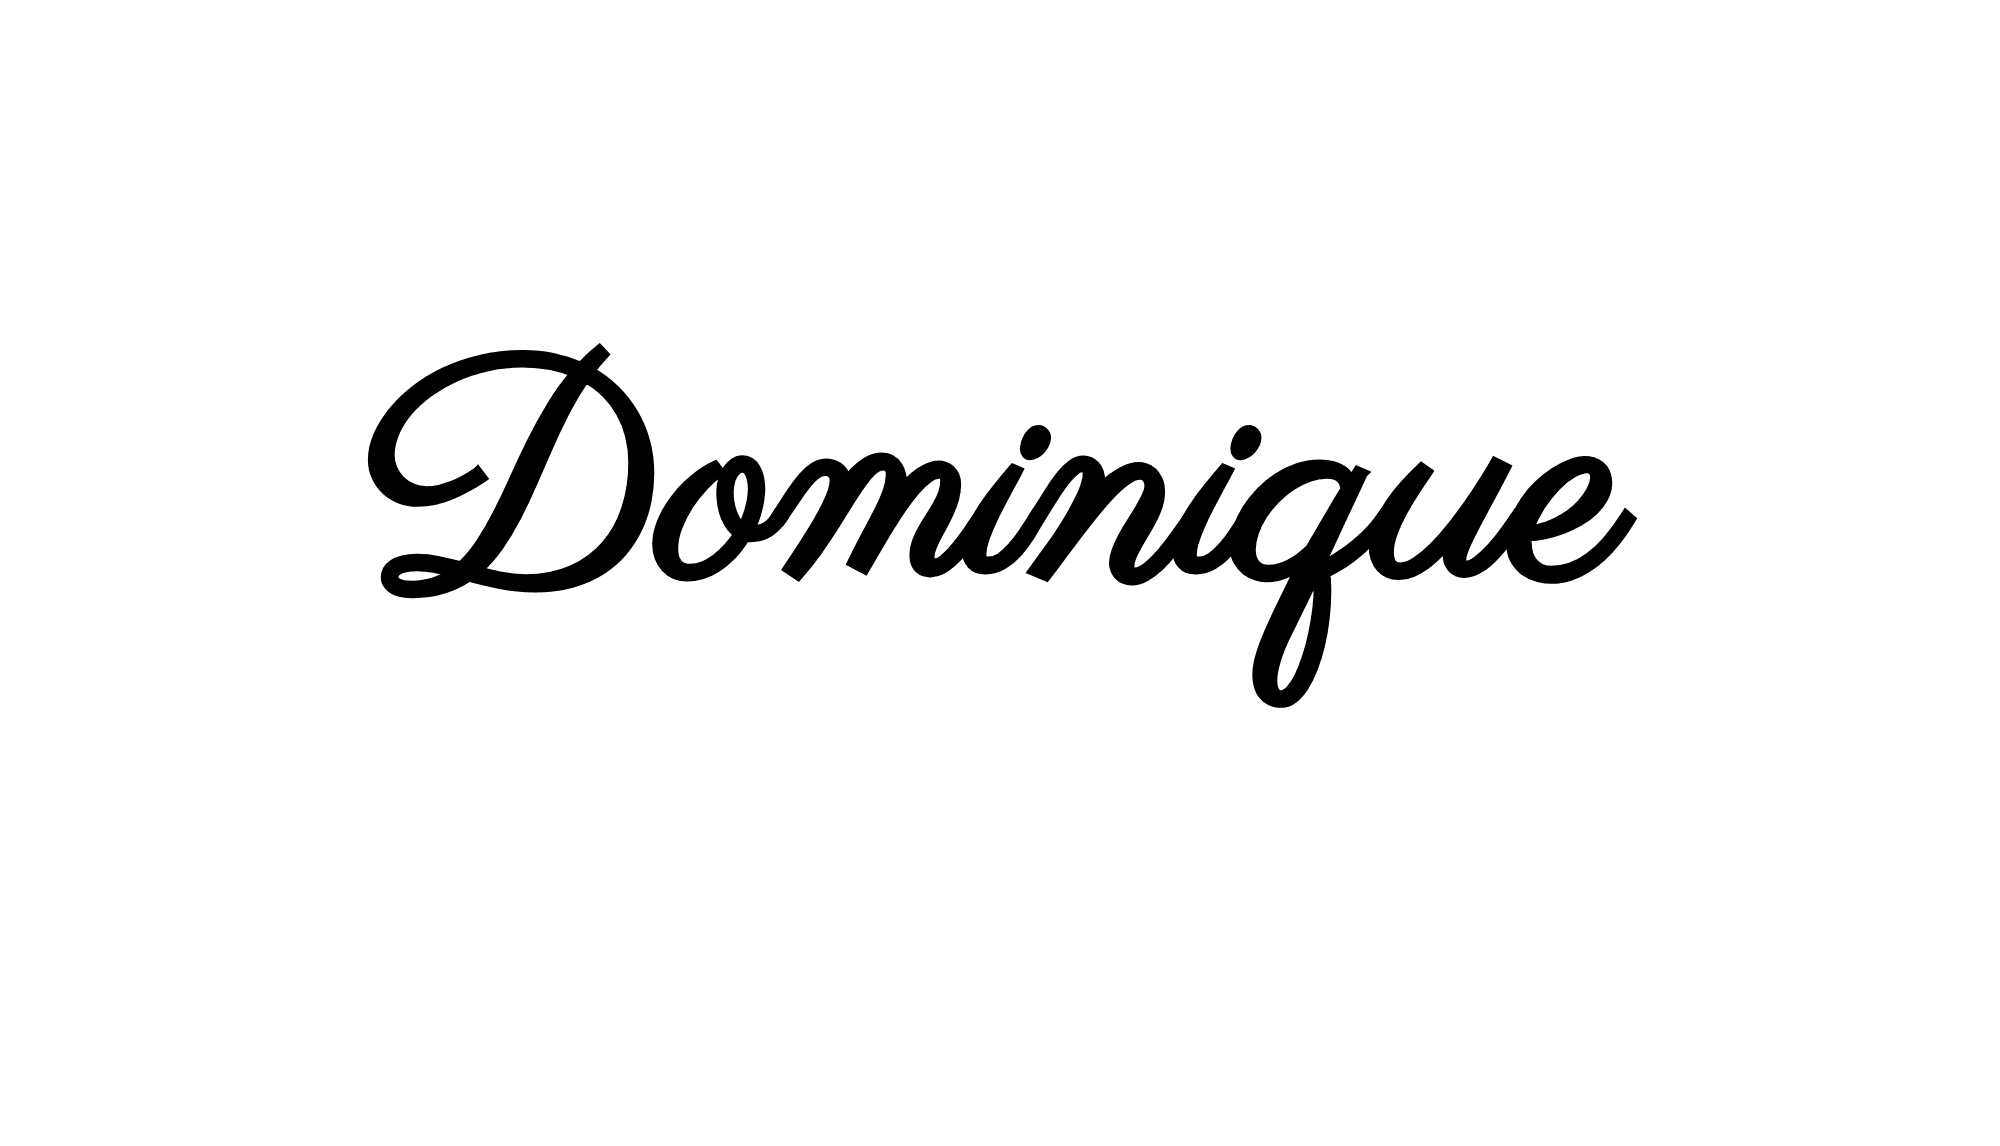 Dominique Gallery & Art Advisory company logo